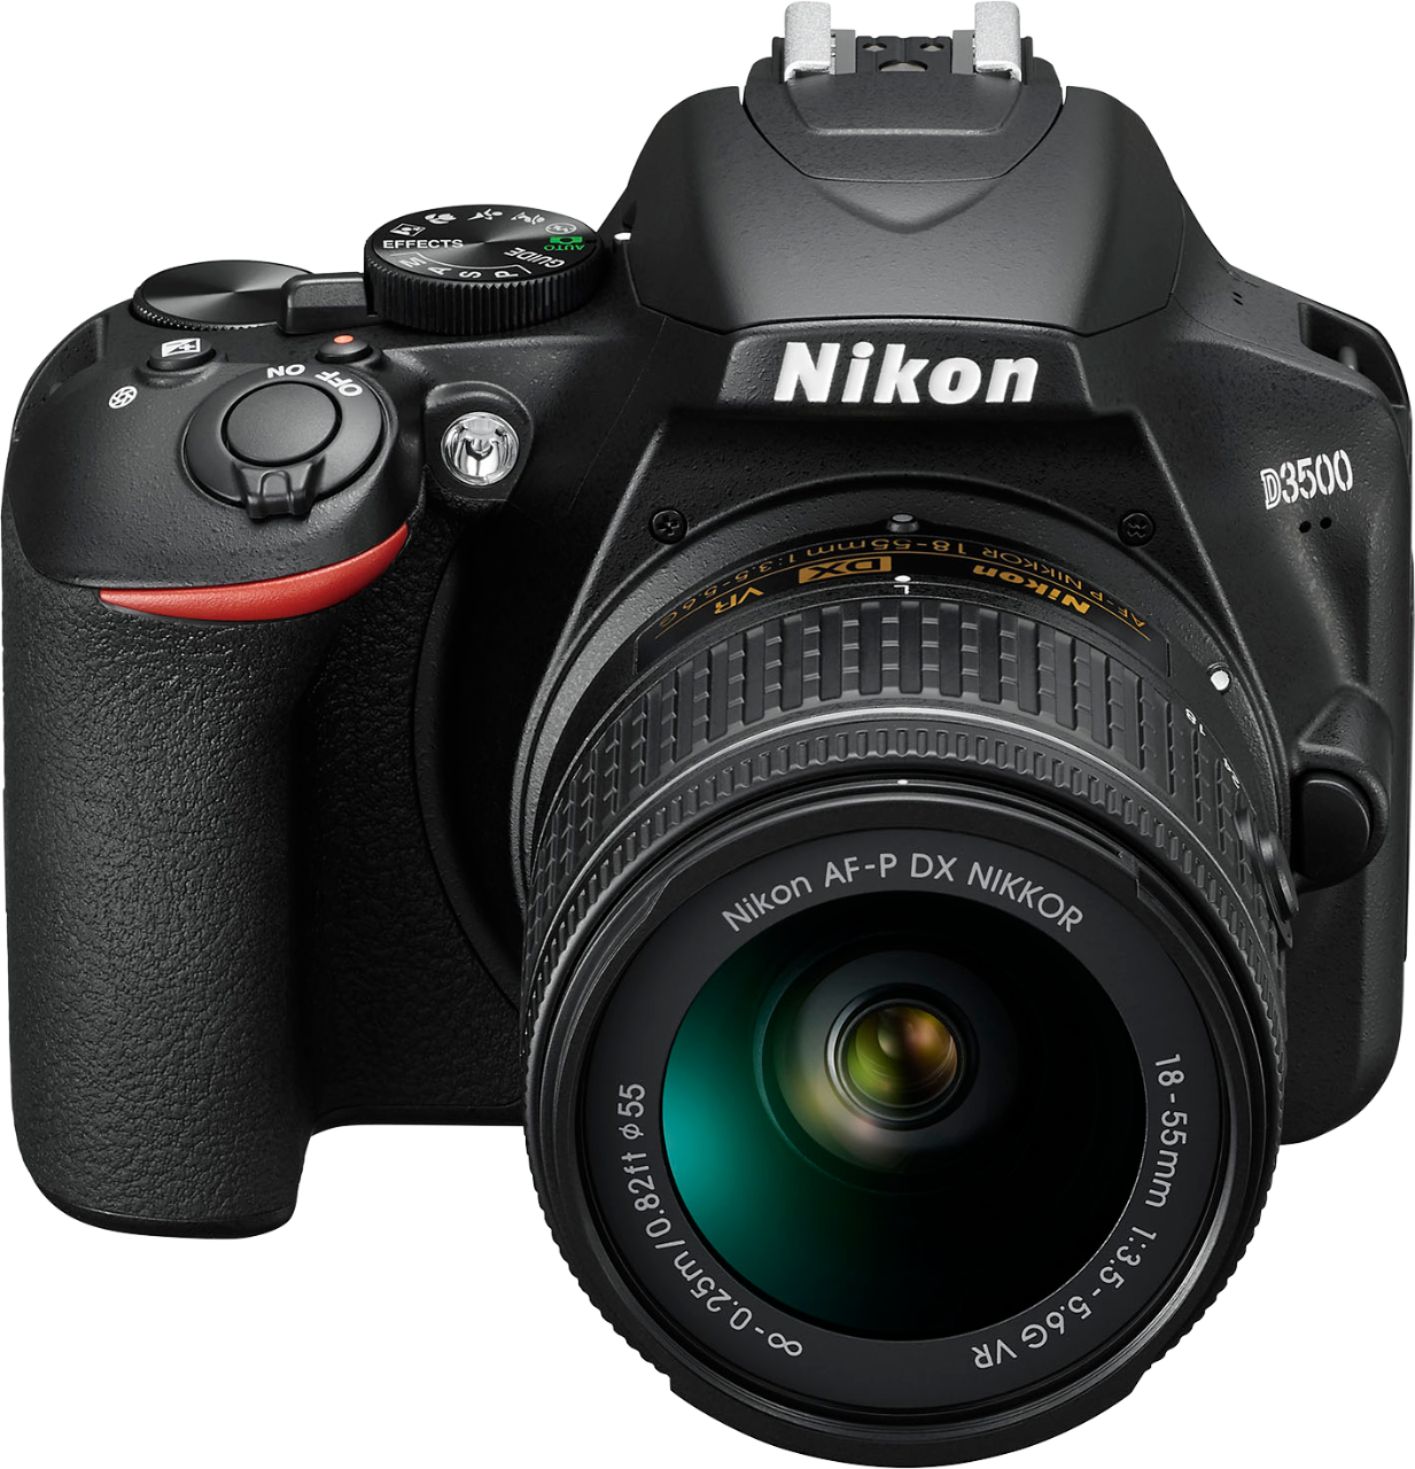 Vacilar Mensajero pegatina Best Buy: Nikon D3500 DSLR Video Two Lens Kit with AF-P DX NIKKOR 18-55mm  f/3.5-5.6G VR & AF-P DX NIKKOR 70-300mm f/4.5-6.3G ED Black 1588